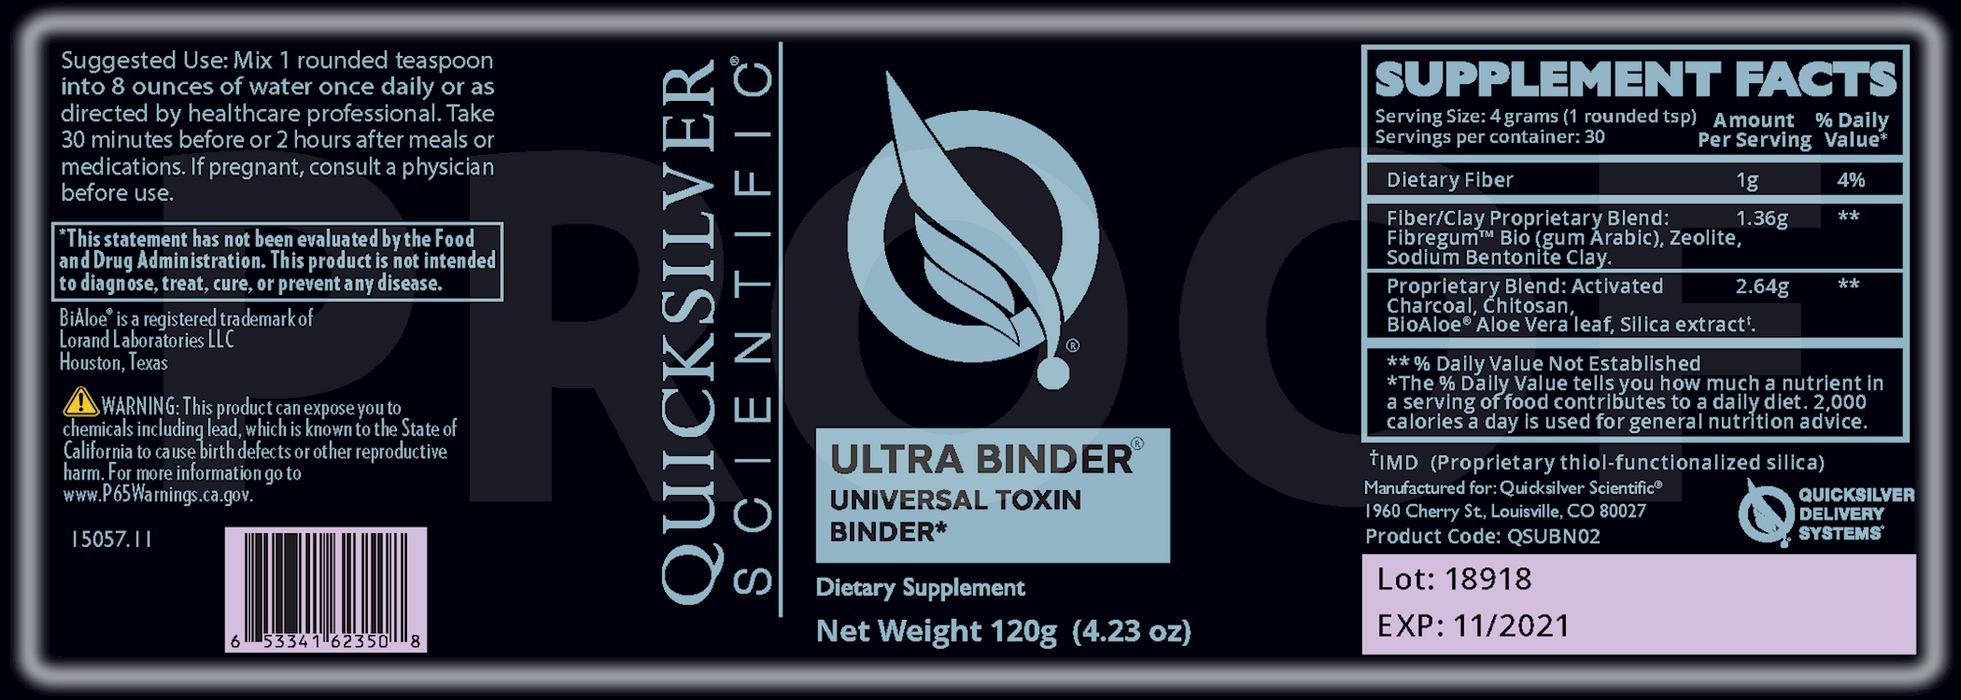 Ultra Binder, Toxin Binder